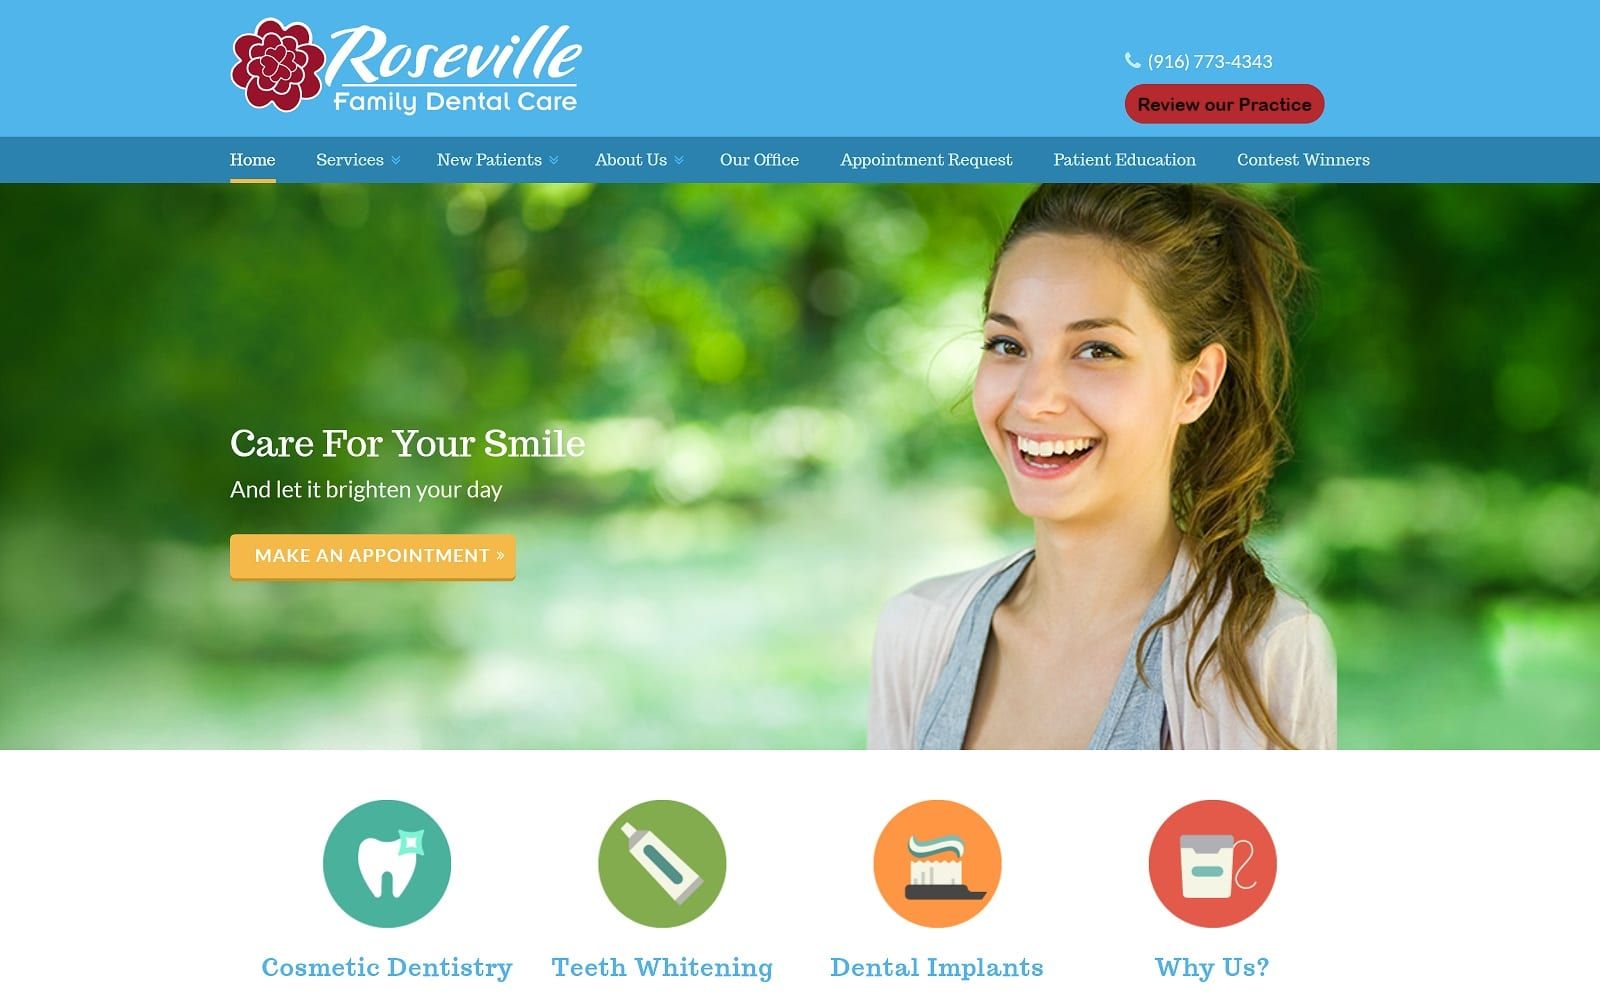 The screenshot of roseville family dental care familydentistinroseville. Com website